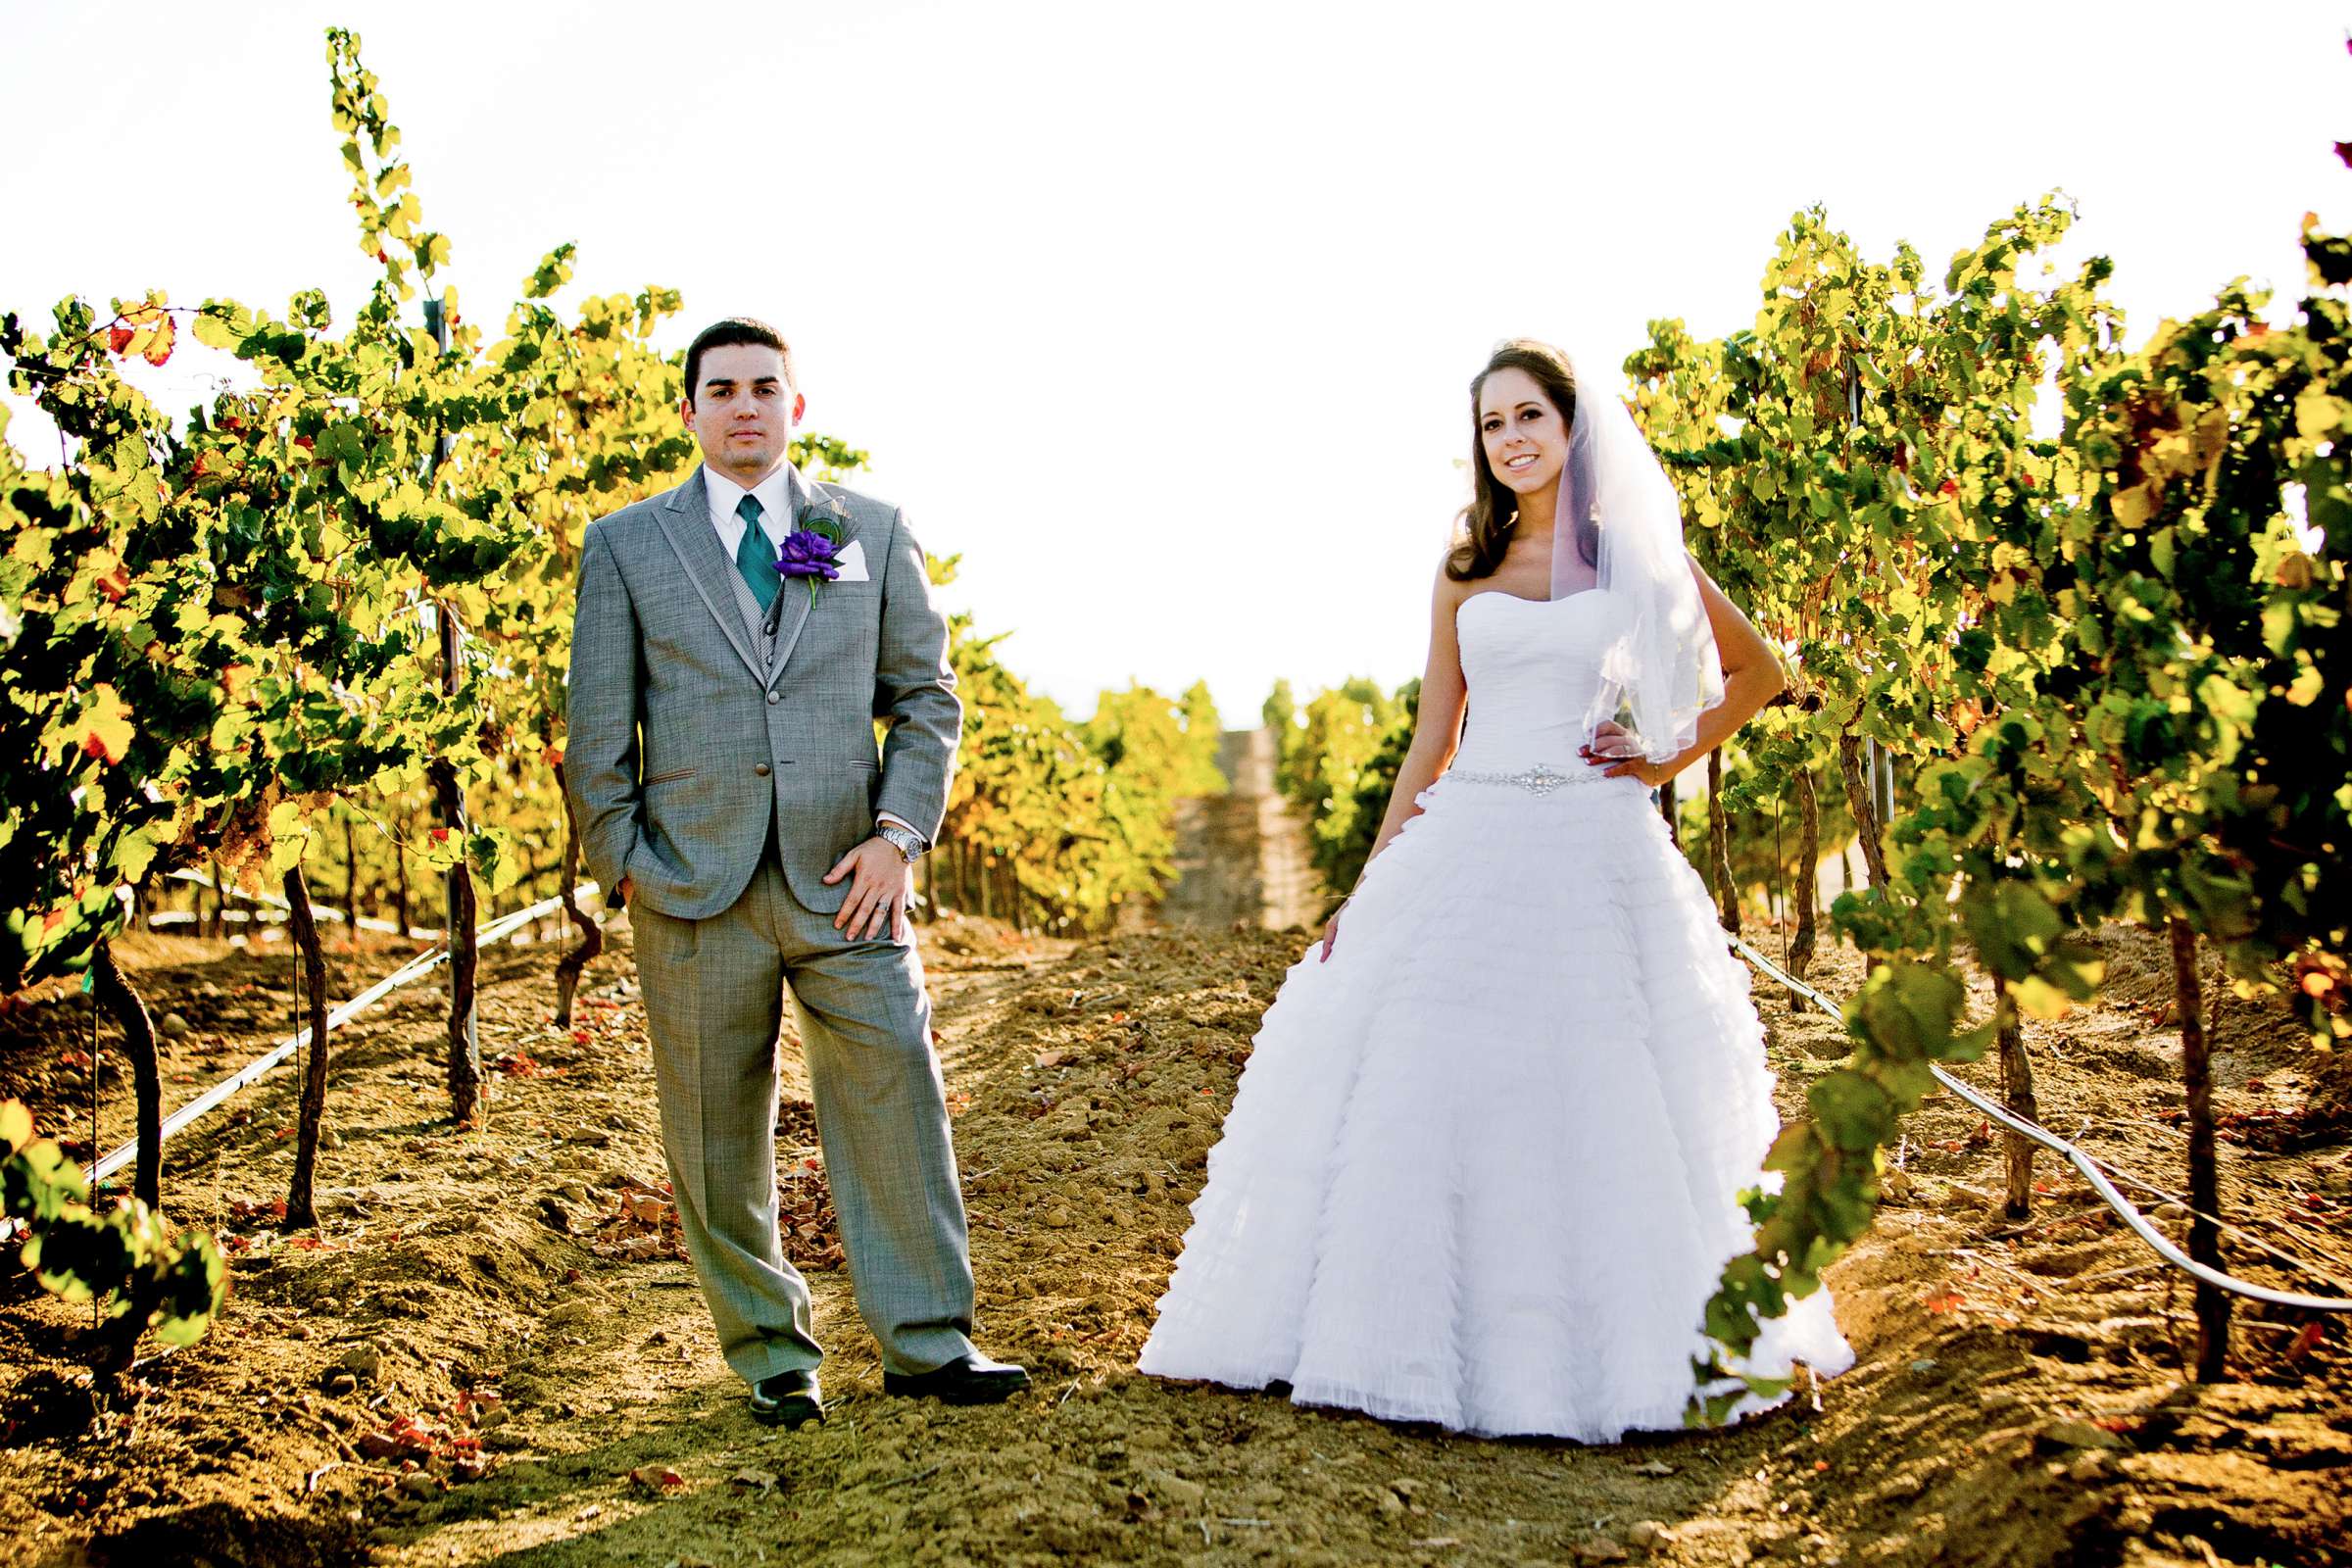 Mount Palomar Winery Wedding, Brandi and Jason Wedding Photo #321678 by True Photography